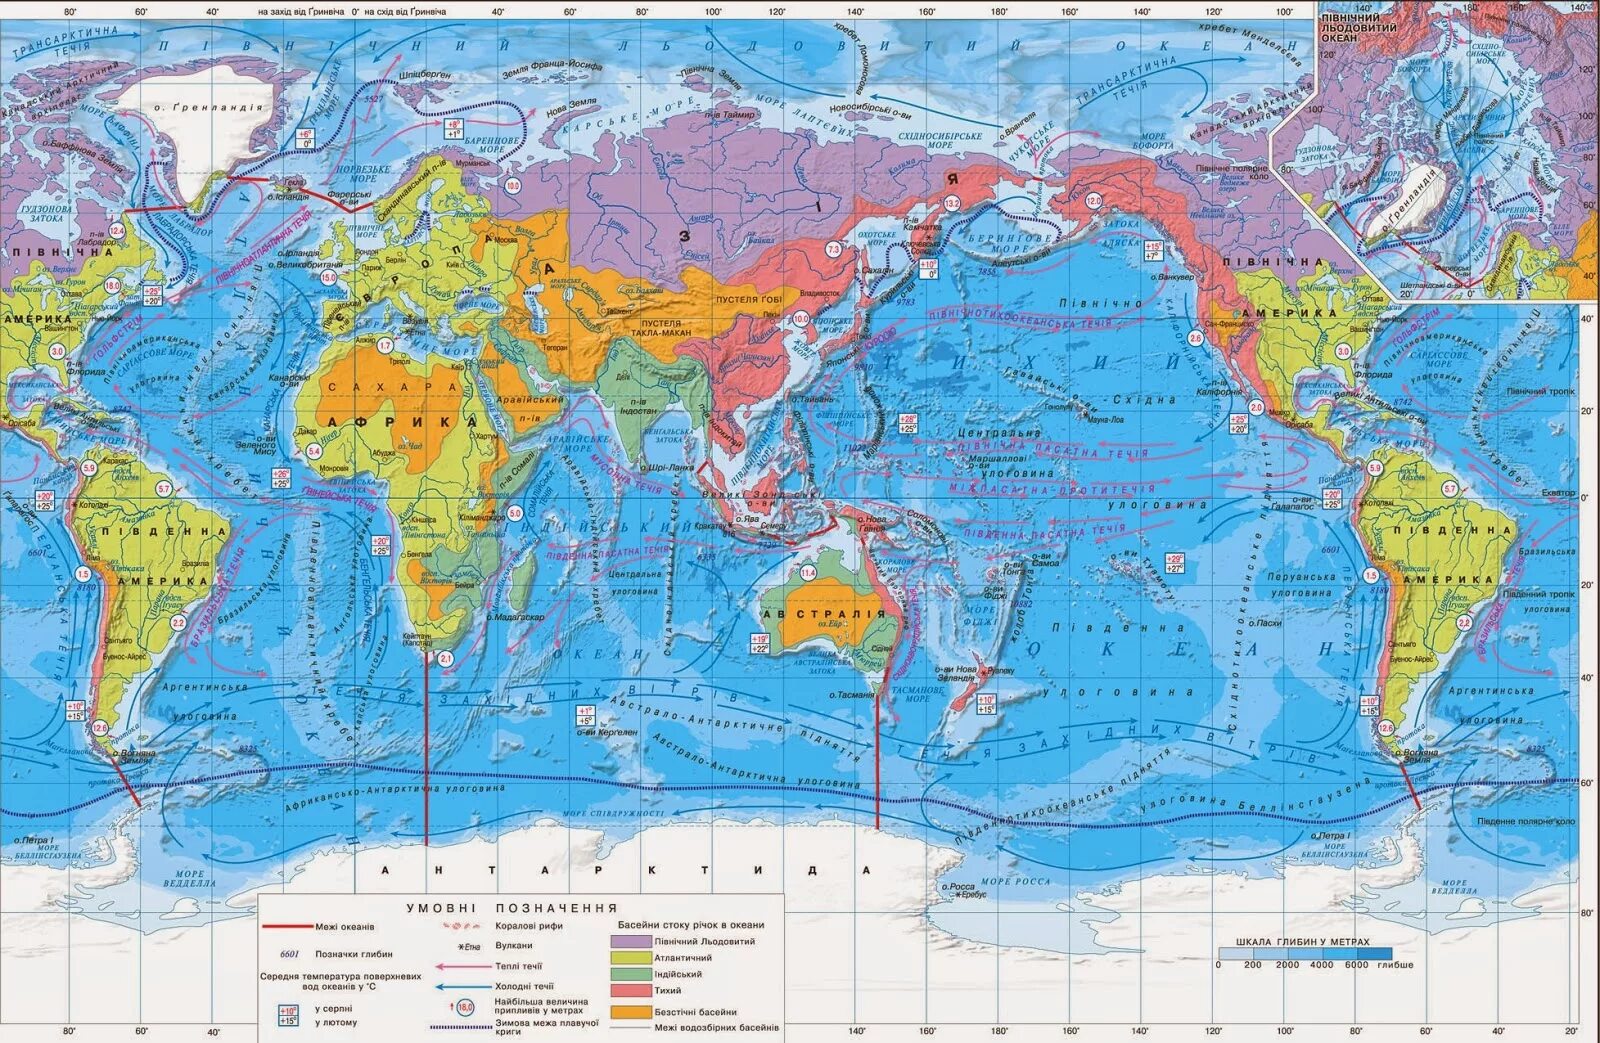 Бассейны мировых океанов. Моря мирового океана на карте. Проливы Тихого океана на карте. Карта мировоготокеана.